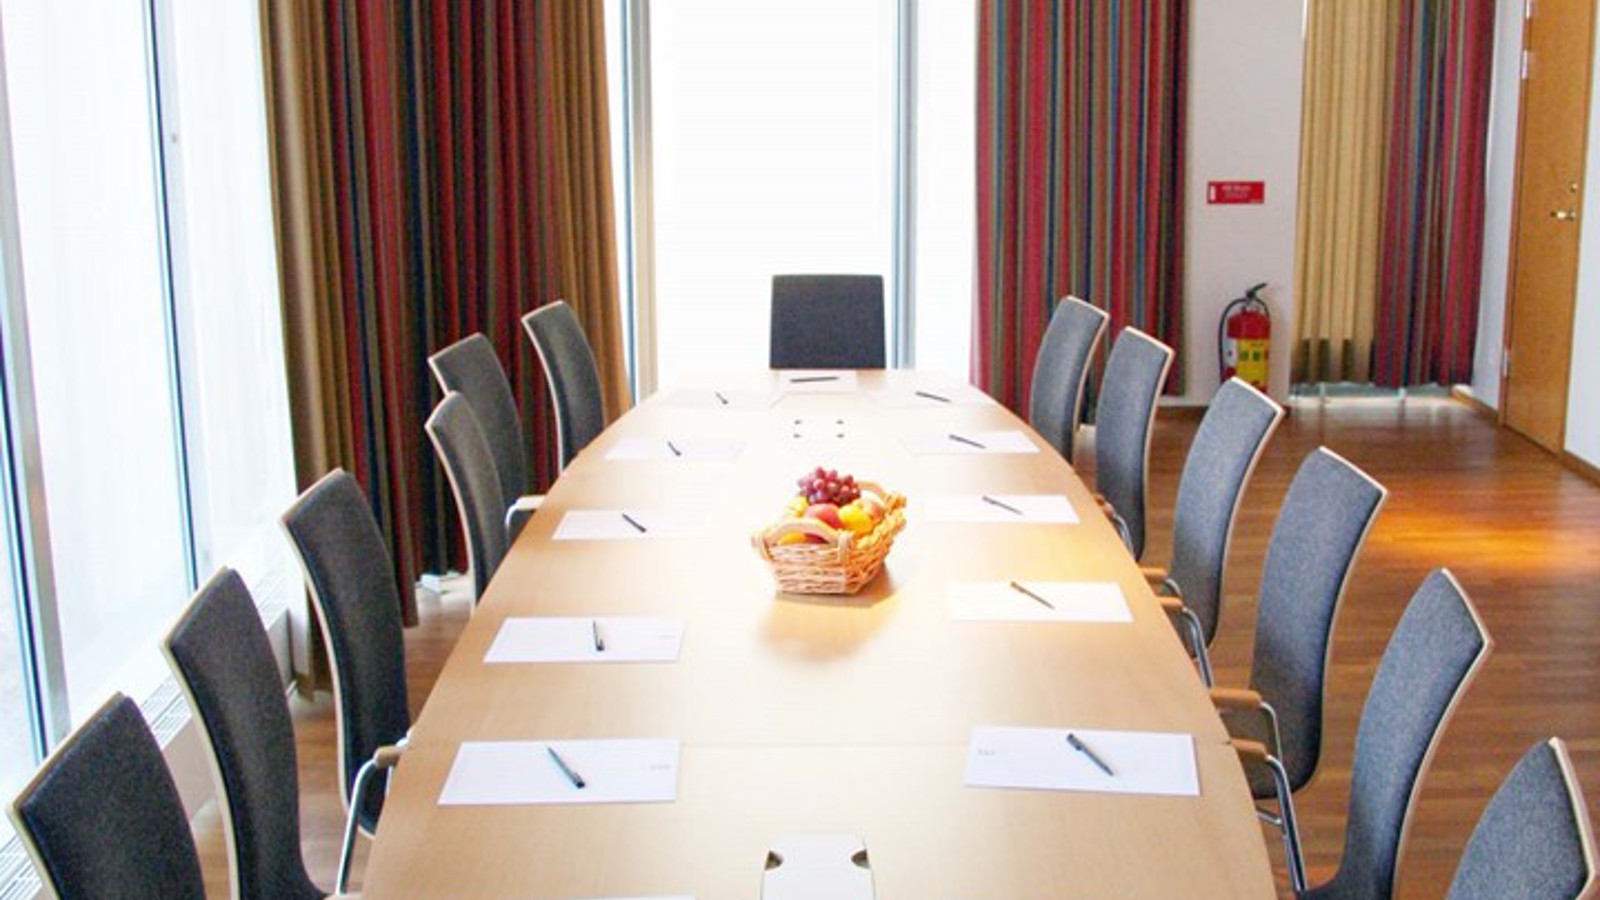 Konferensrum med styrelsesittning, träbord, stora fönster och färgglada gardiner